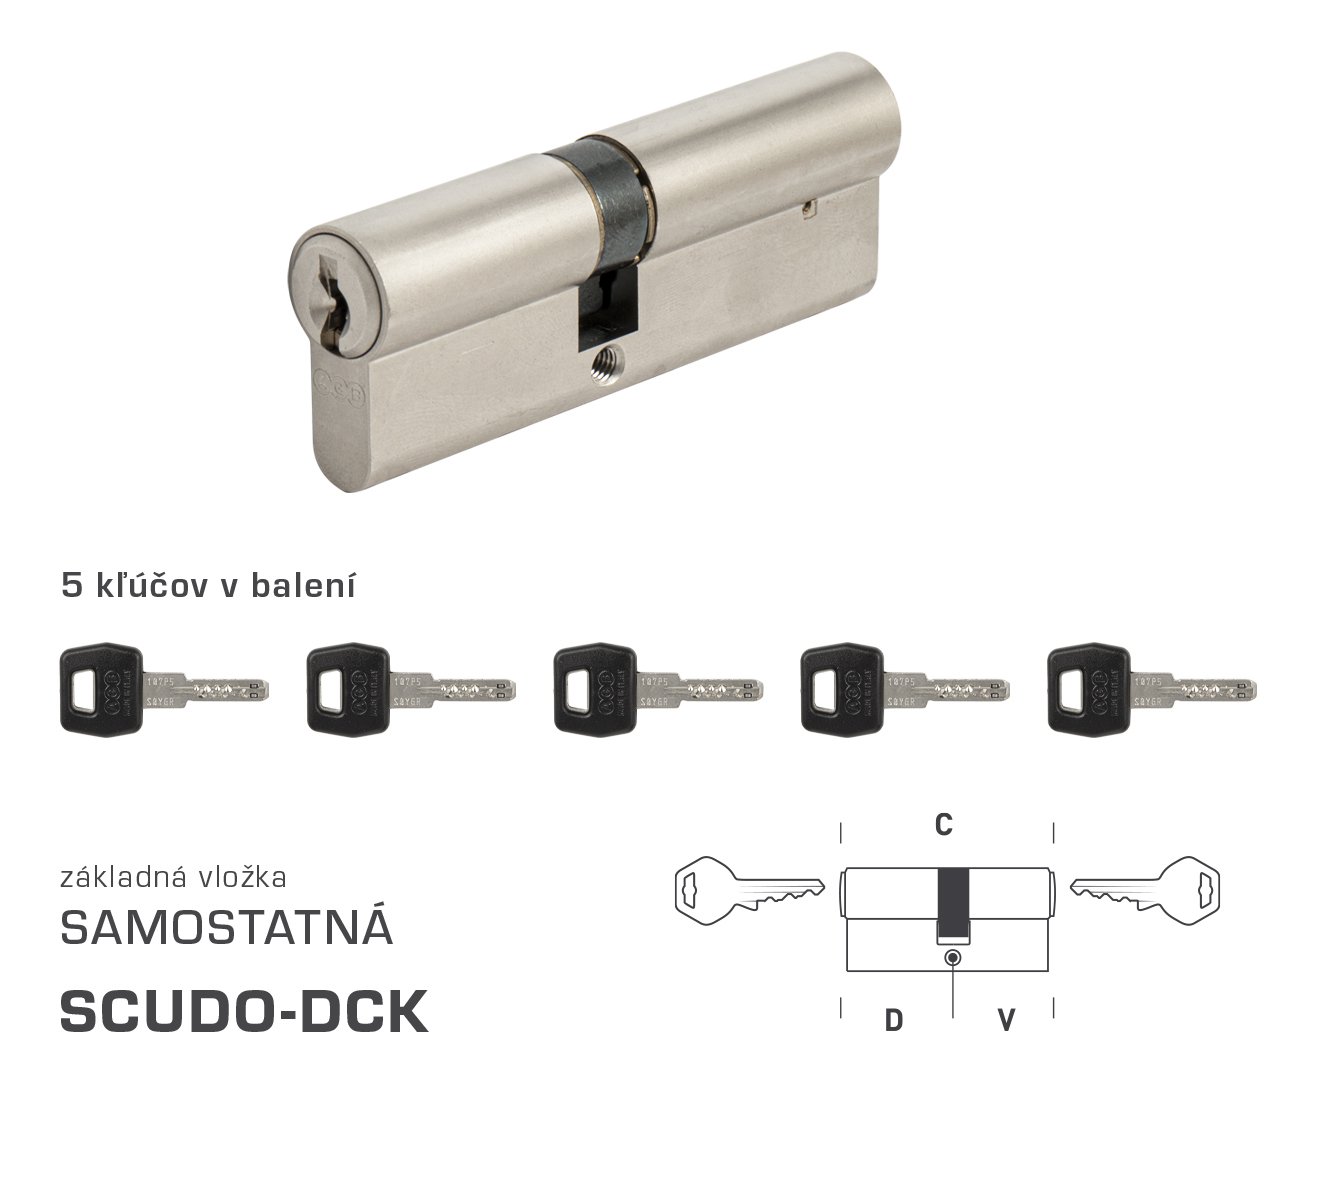 E-shop AGB - Vložka SCUDO DCK S BSZ obojstranná cylindrická vložka 30+35 mm + 5x kľúč